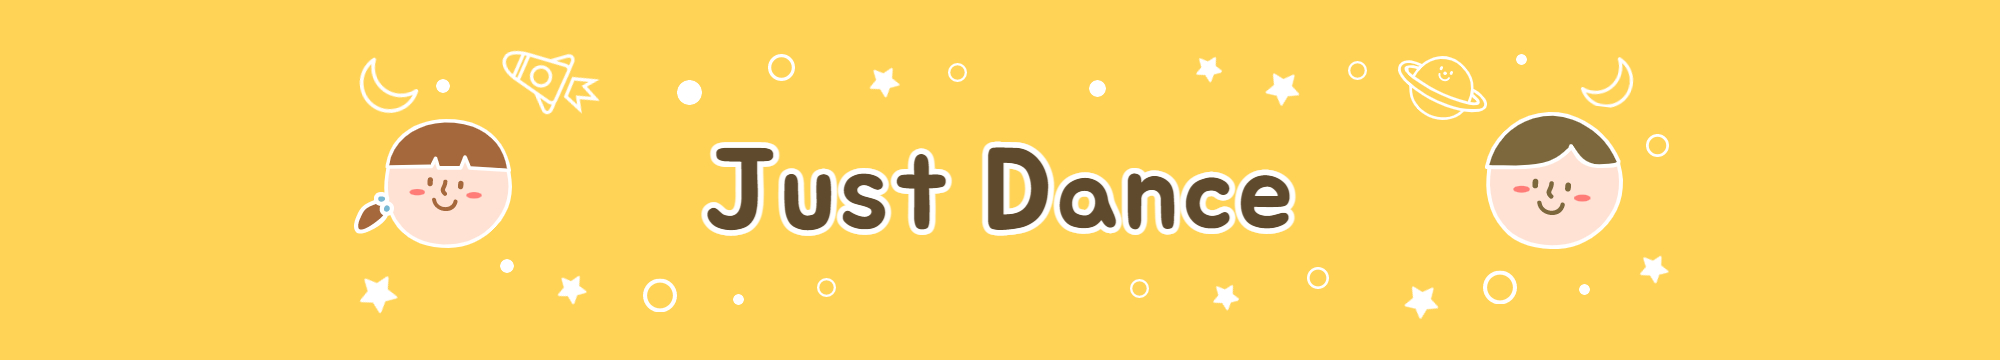 영유 노래 추천 - Just Dance